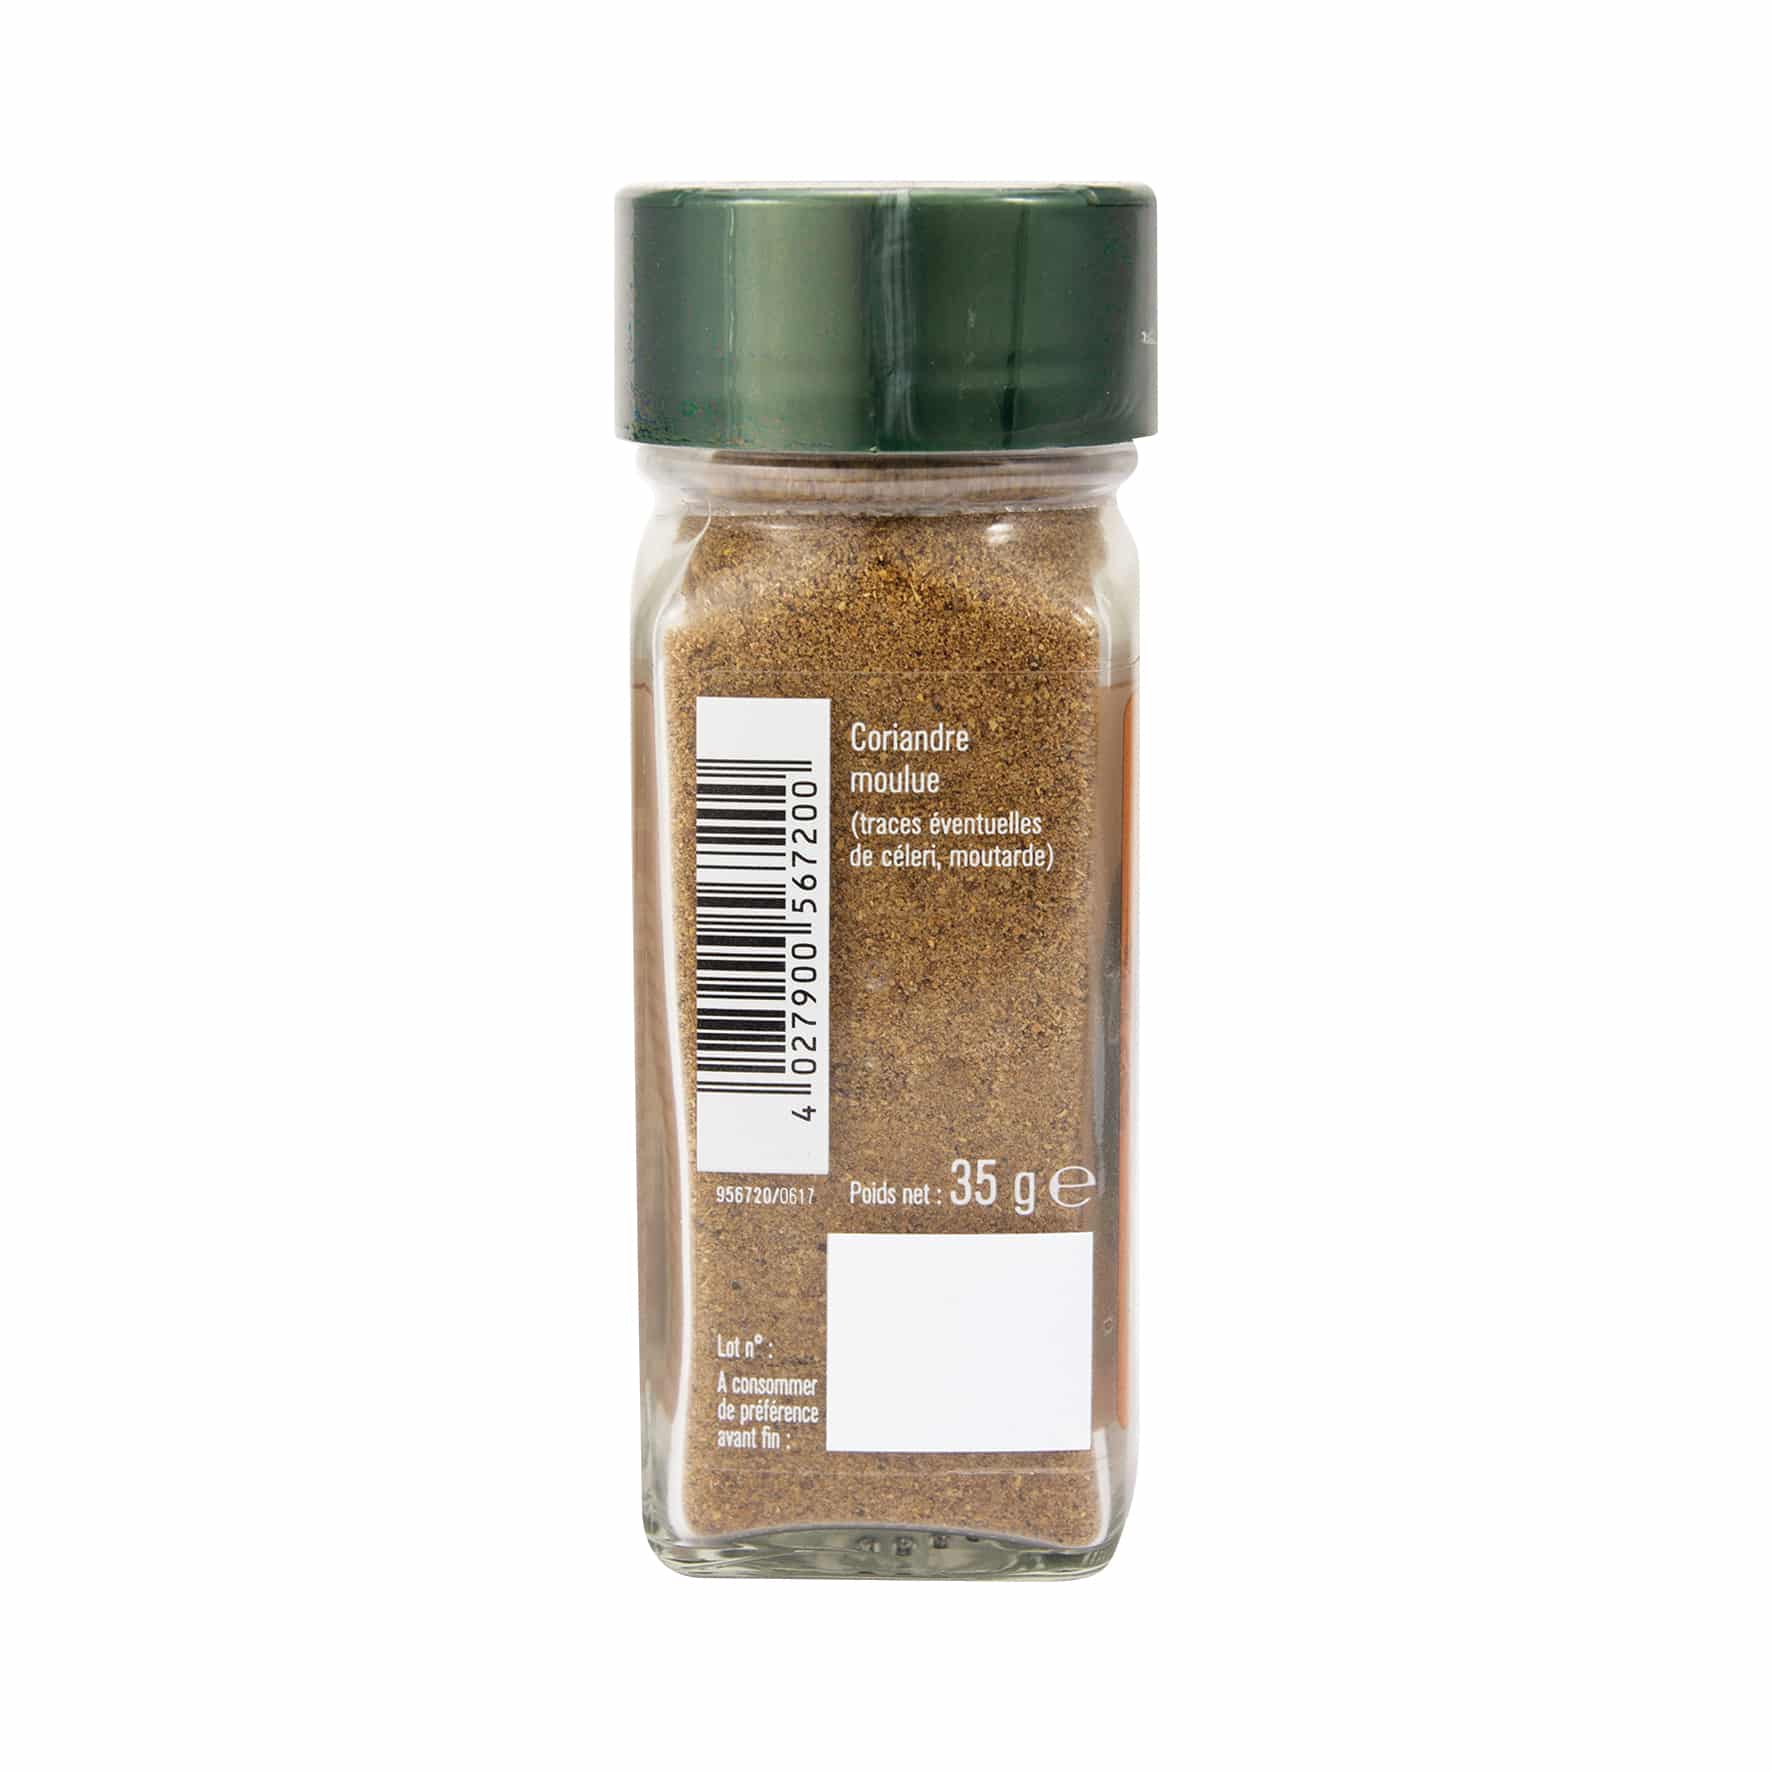 Coriandre moulue - Achat au poids, origine, bienfaits et cuisine